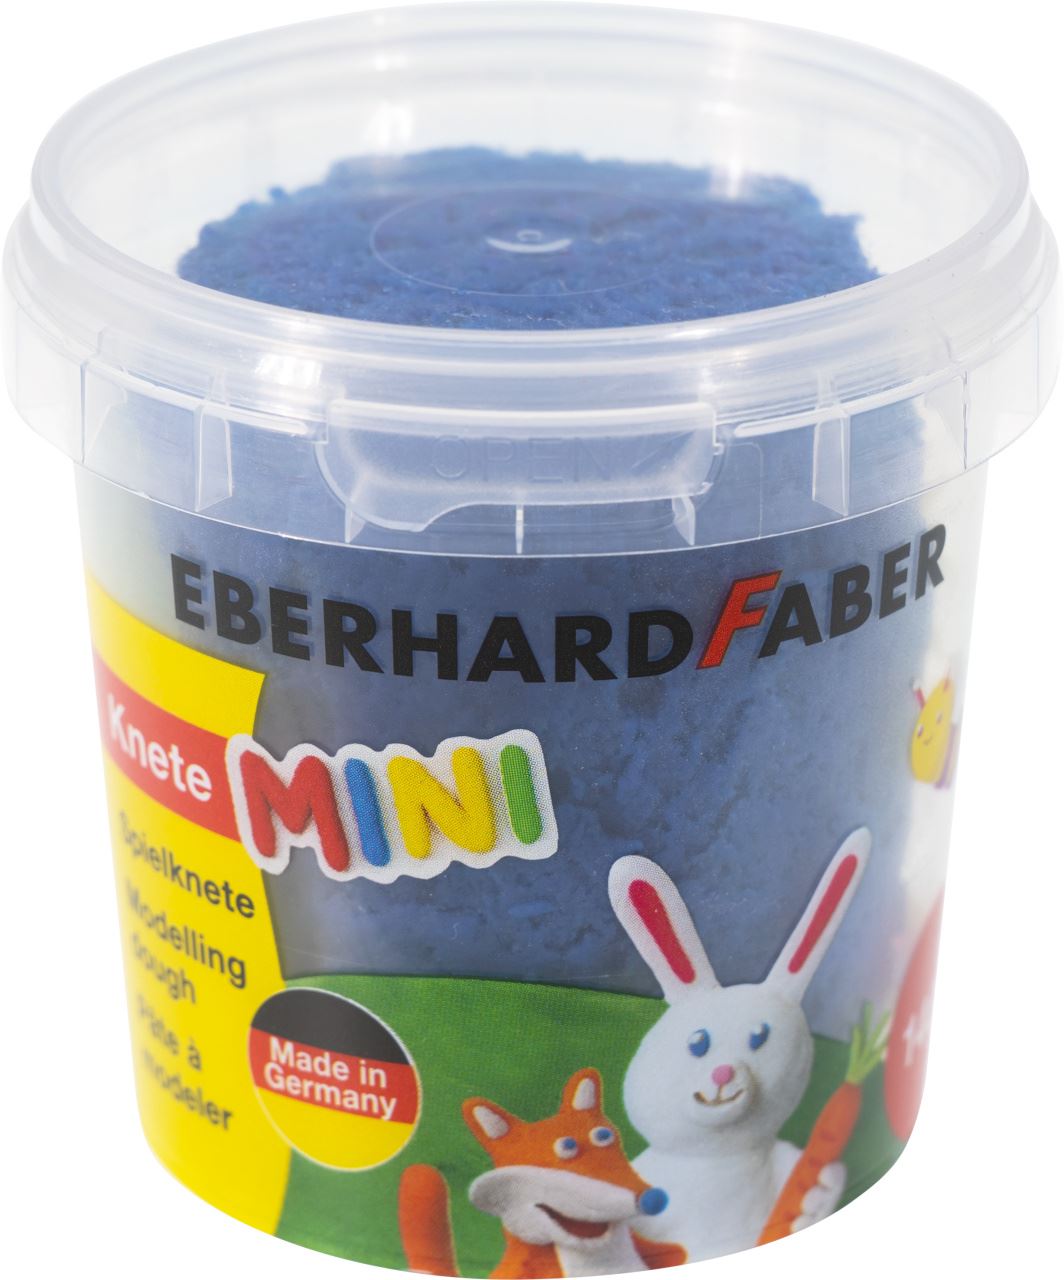 Eberhard-Faber - Mini Kids Spielknete Basisfarben, Set mit 4 Farben